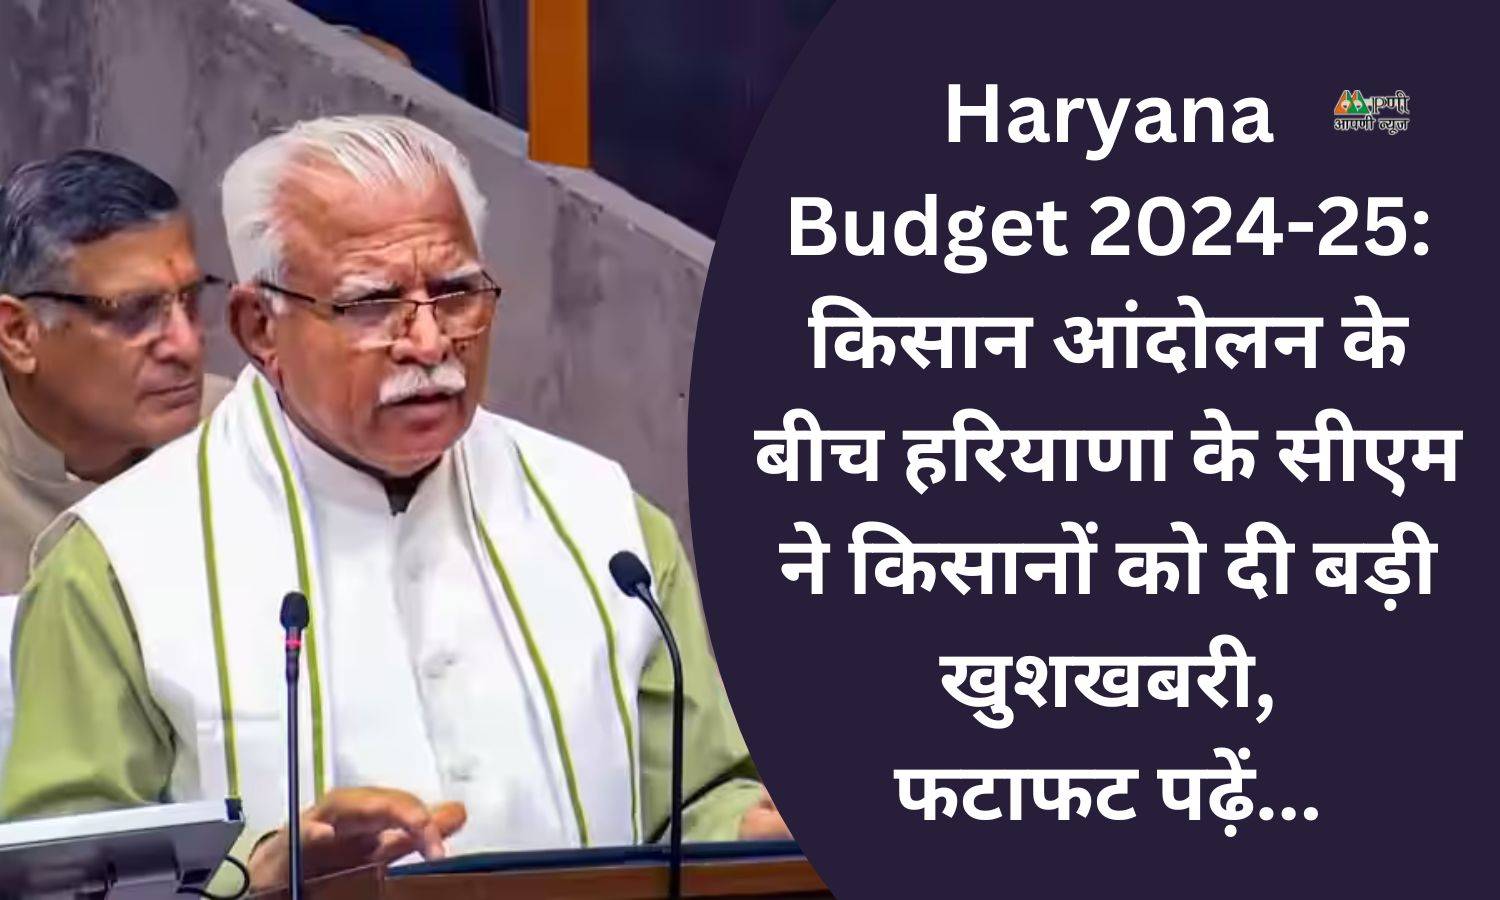 Haryana Budget 2024-25: किसान आंदोलन के बीच हरियाणा के सीएम ने किसानों को दी बड़ी खुशखबरी, फटाफट पढ़ें...